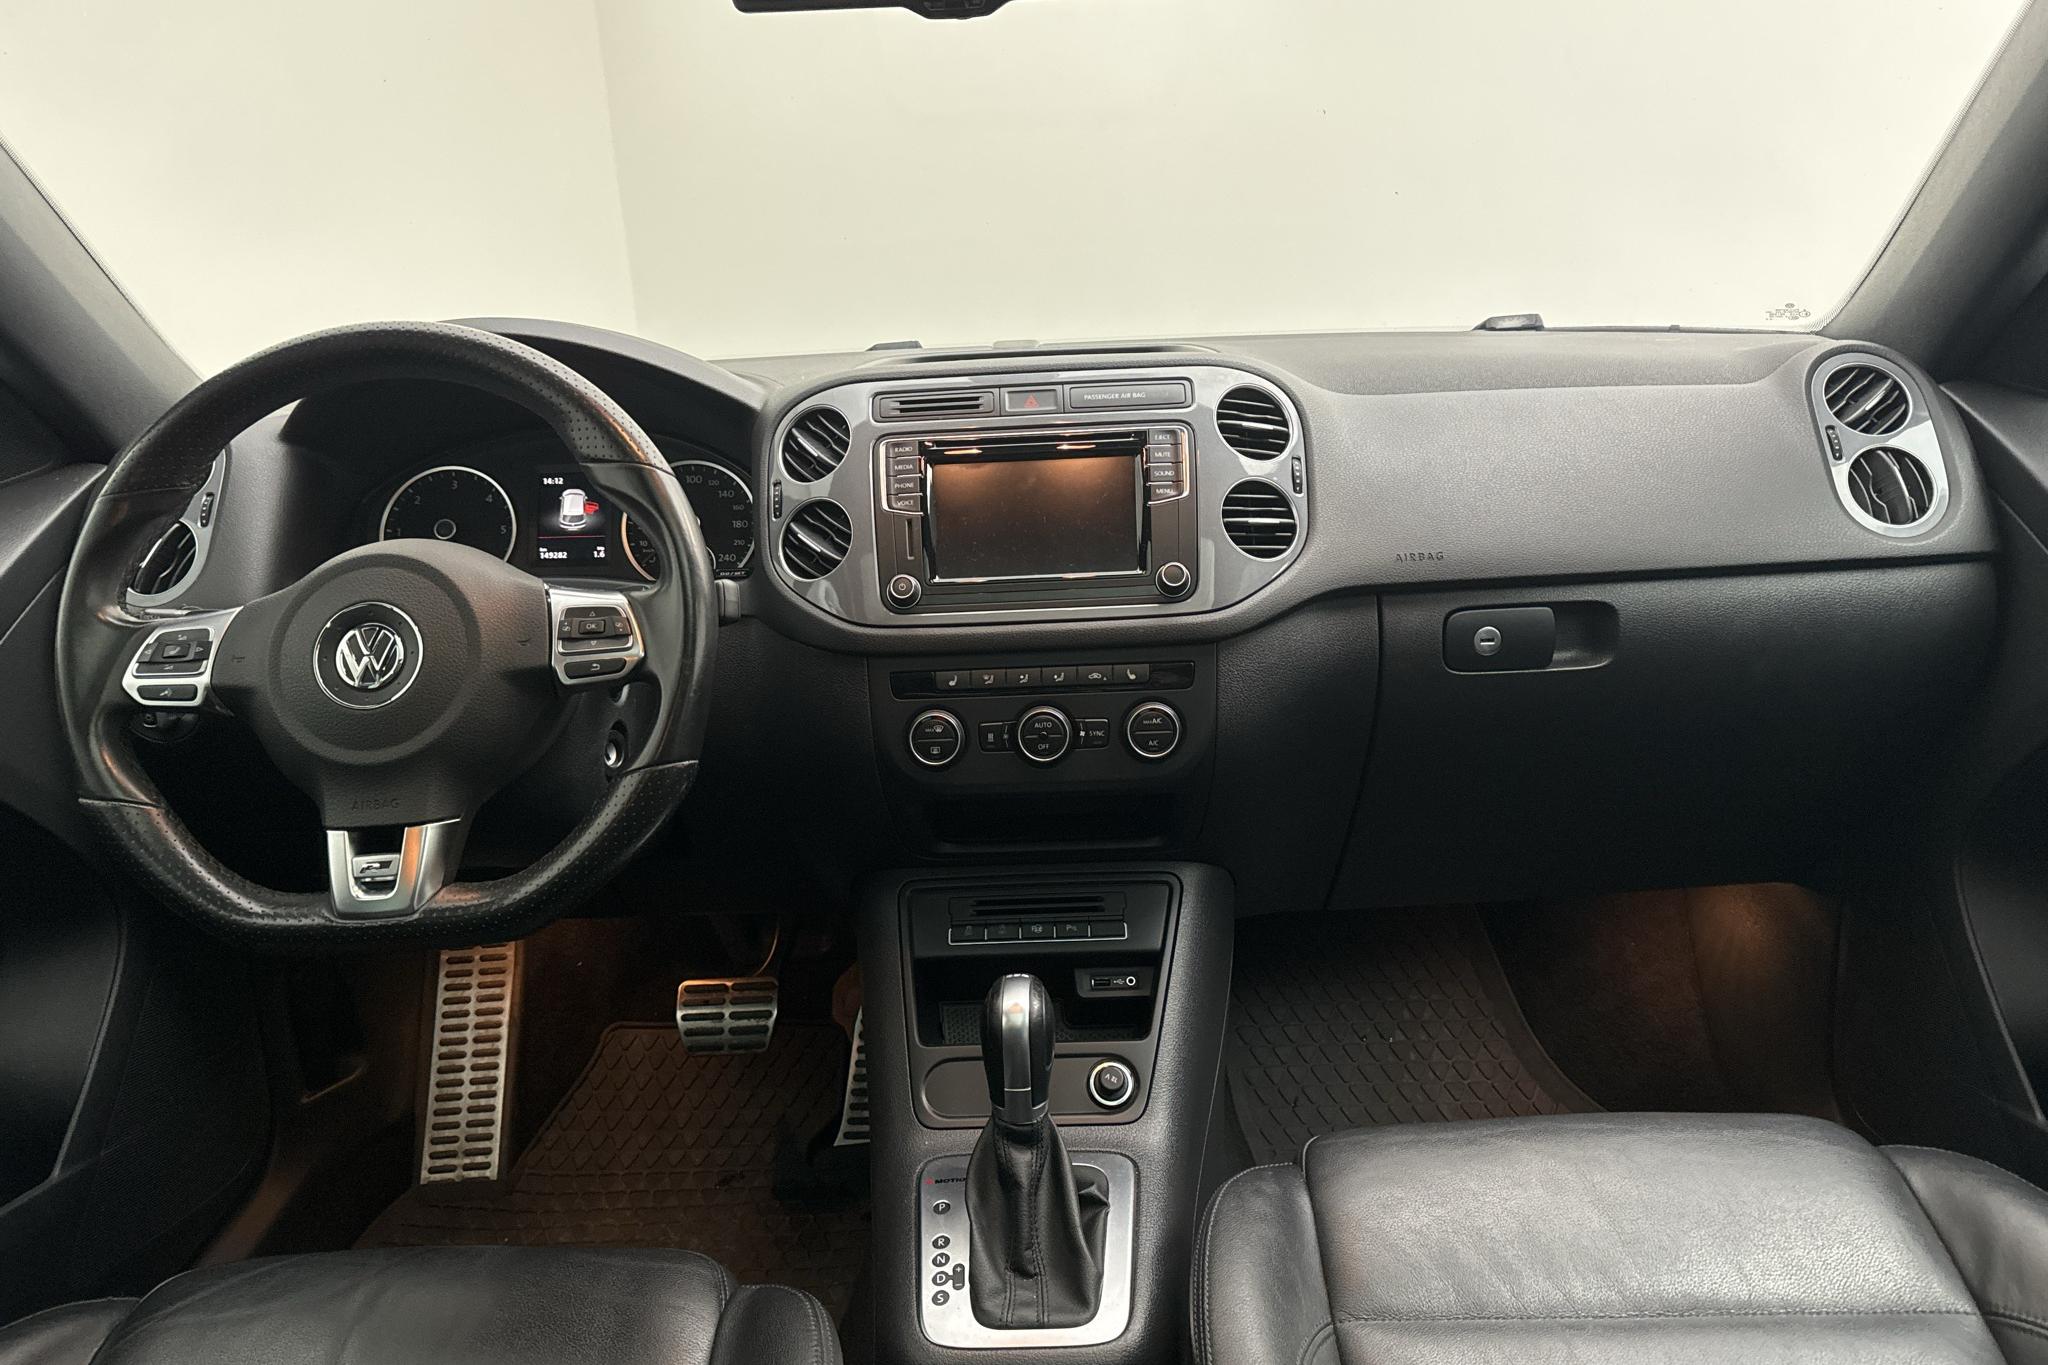 VW Tiguan 2.0 TDI 4MOTION BlueMotion Technology (184hk) - 149 290 km - Automatic - white - 2016